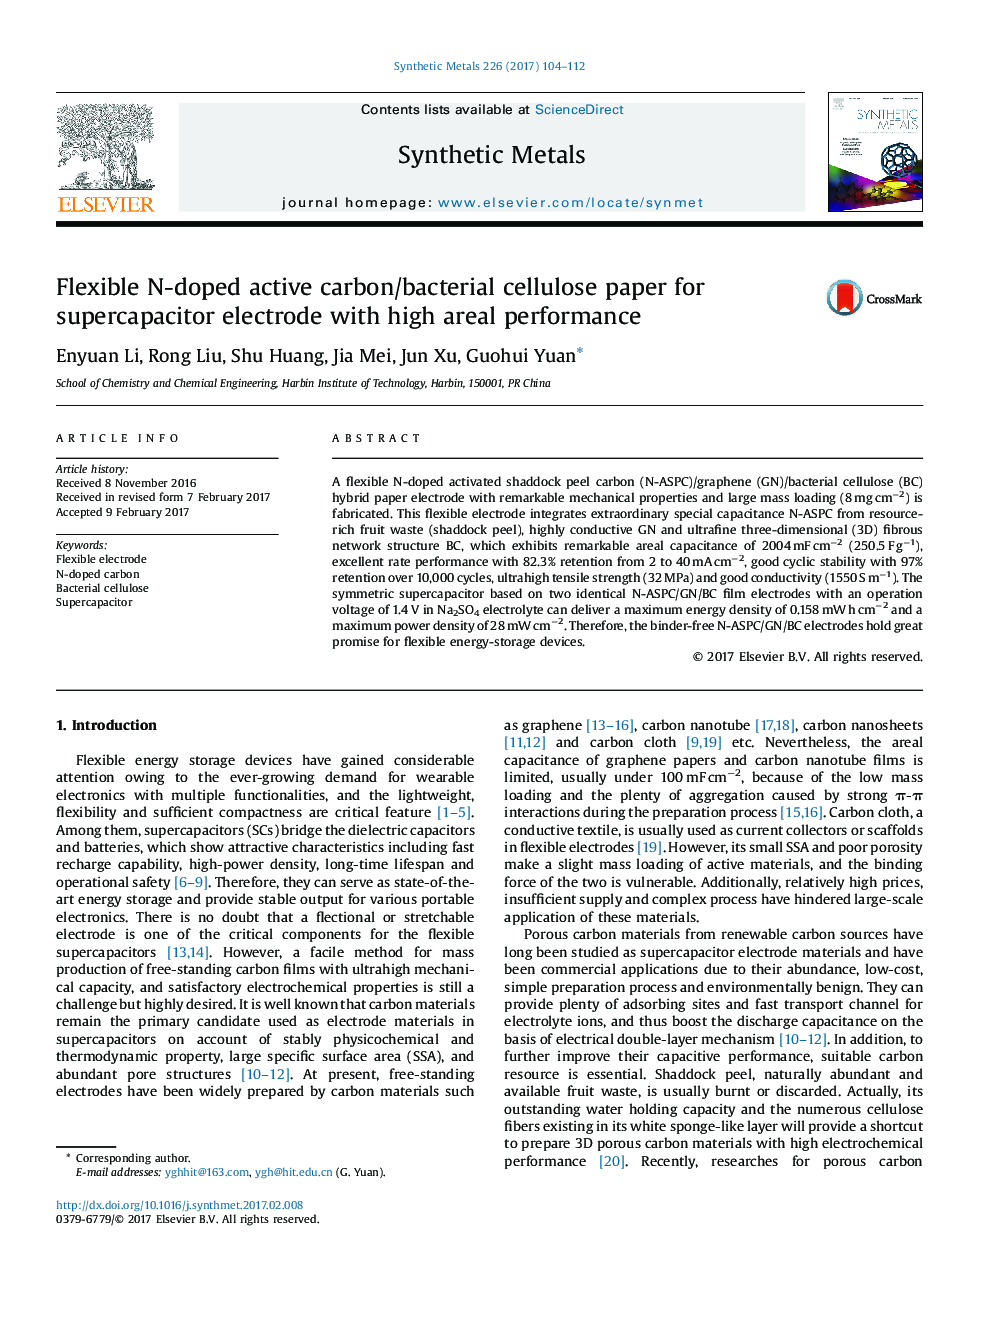 مقاله سلولز کربن فعال / قابل انعطاف با کربن فعال برای الکترودهای سوپراسپرتزر با عملکرد منطقه ای بالا 